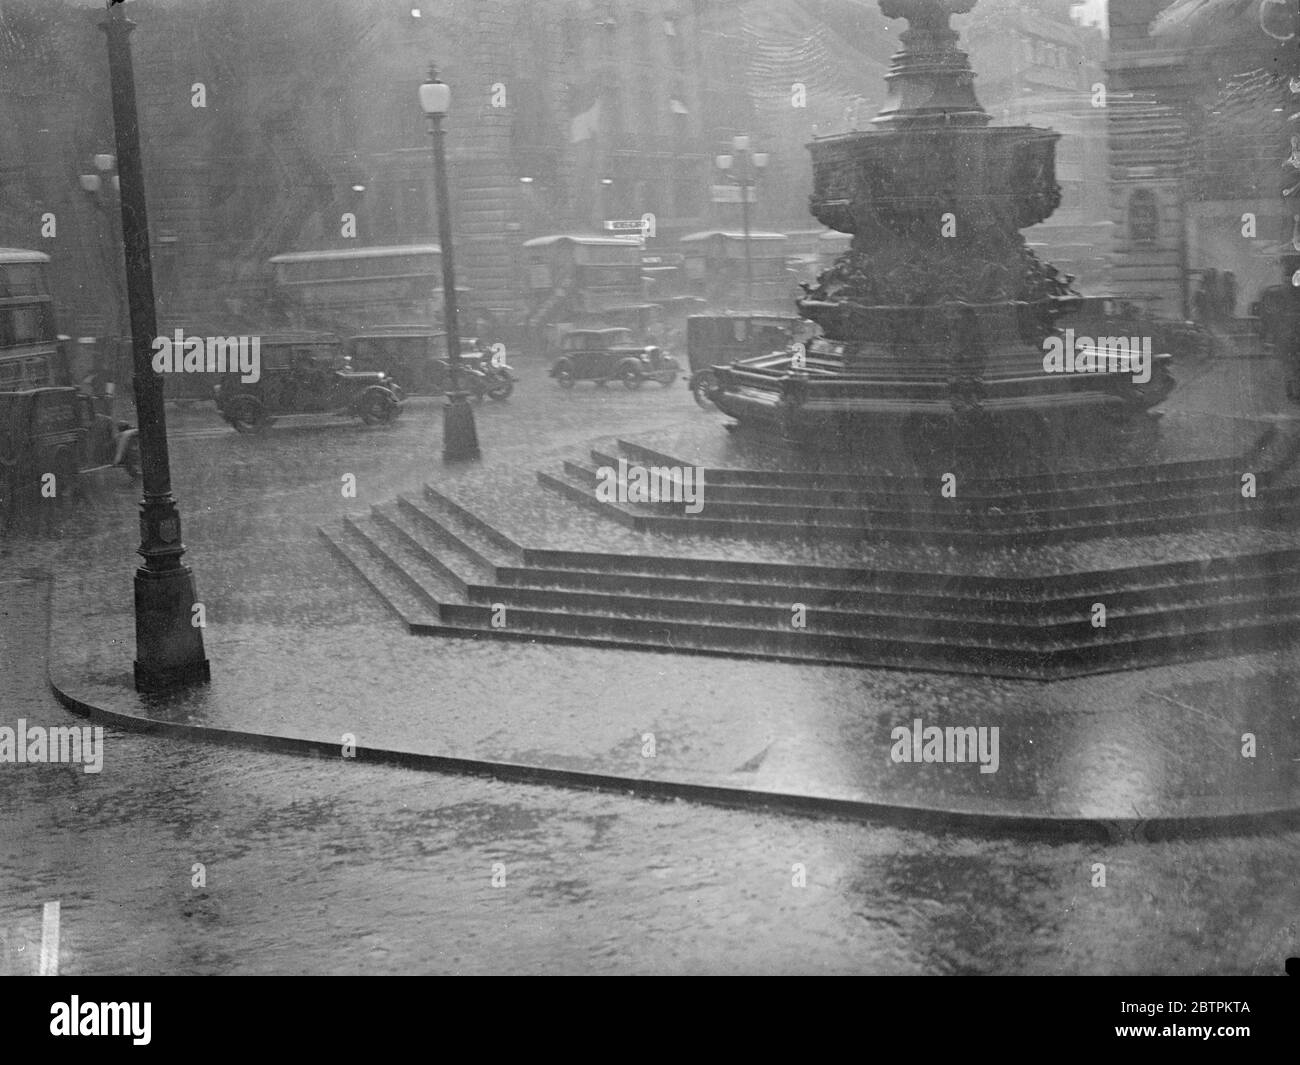 Les Londoniens délurés de Londres furent envoyés à l'abri de la pluie qui s'enferra dans des torrents . Photos : UNE scène de Piccadilly pendant la pluie . 9 juillet 1936 Banque D'Images